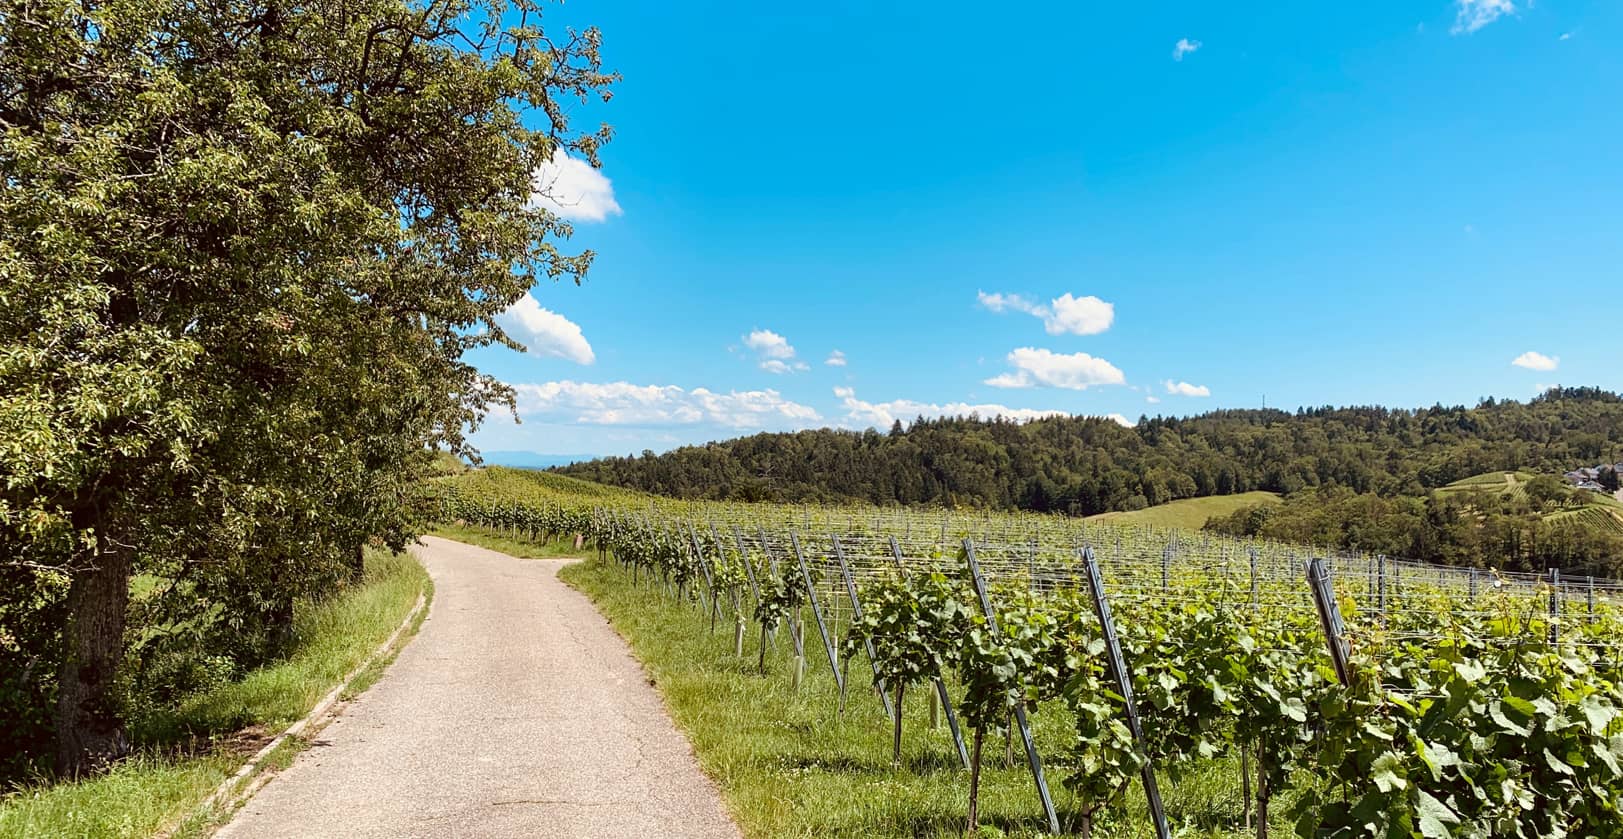 Choisir un placement plaisir entre investir en vigne et foret France (1)